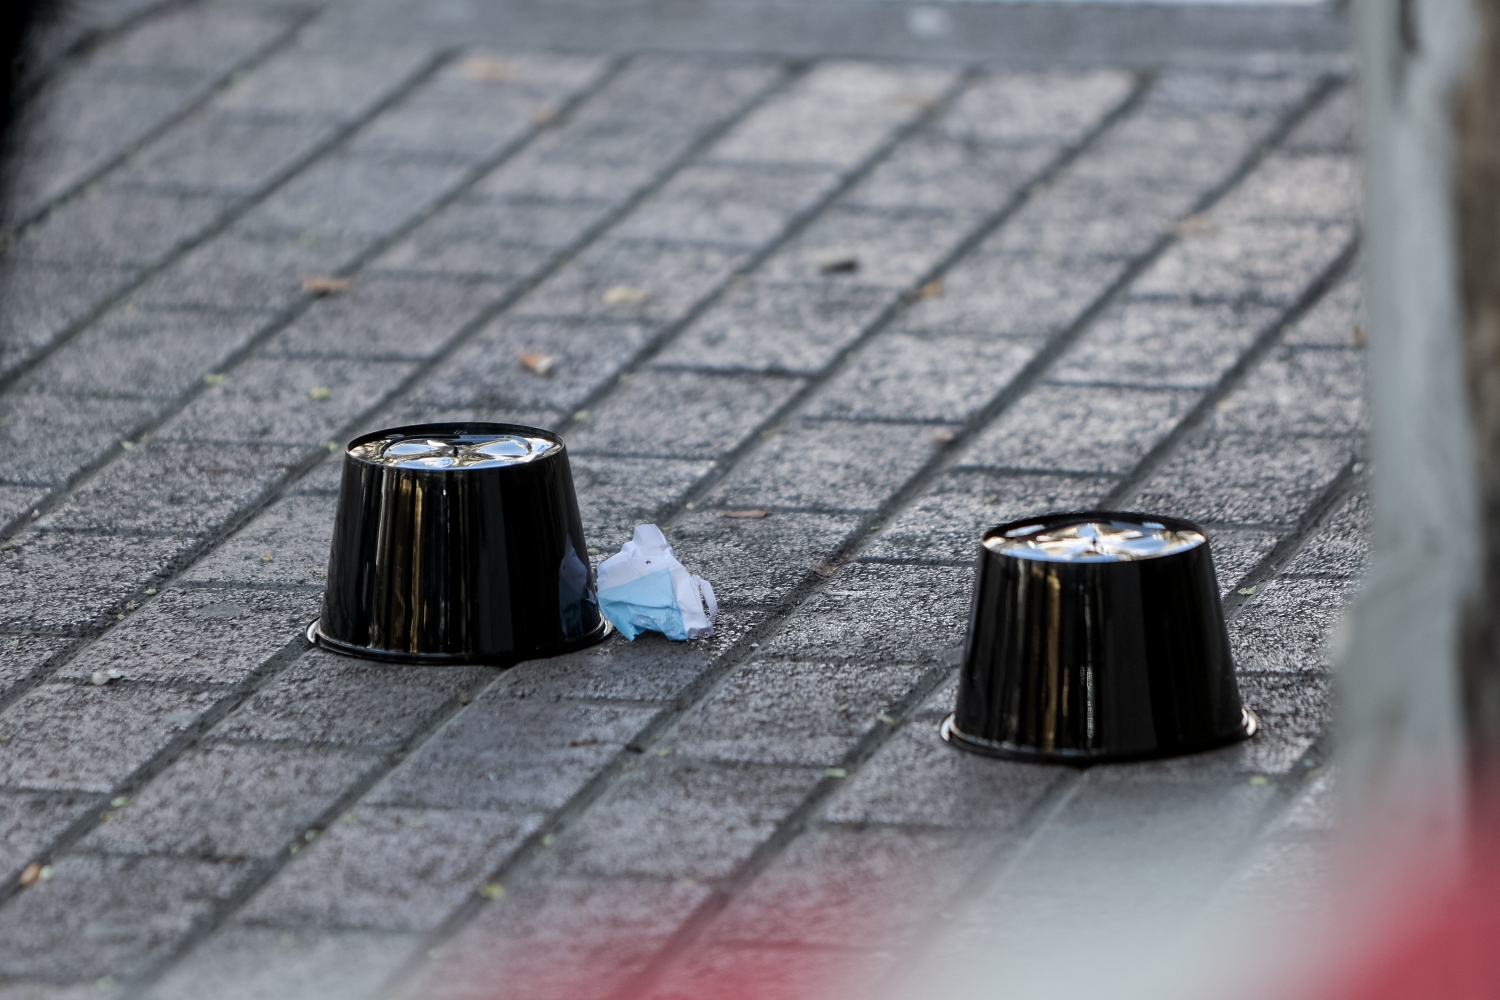 Πυροβολισμοί μέρα μεσημέρι στο κέντρο της Αθήνας: Δύο τραυματίες